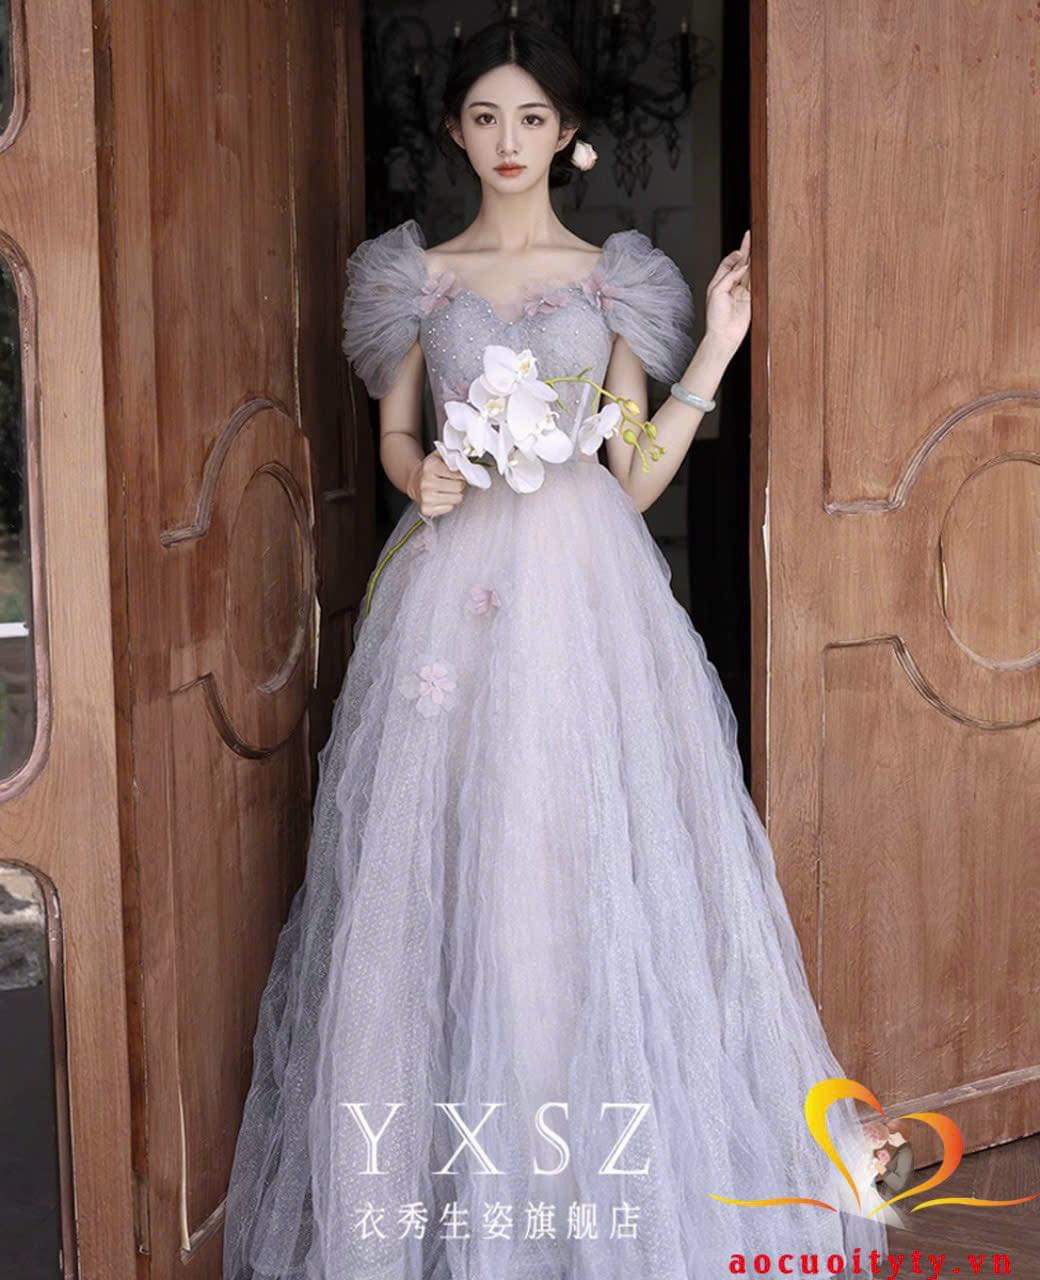 Hoa hậu Tiểu Vy nhờ fans chọn váy dạ hội và cái kết đắng lòng